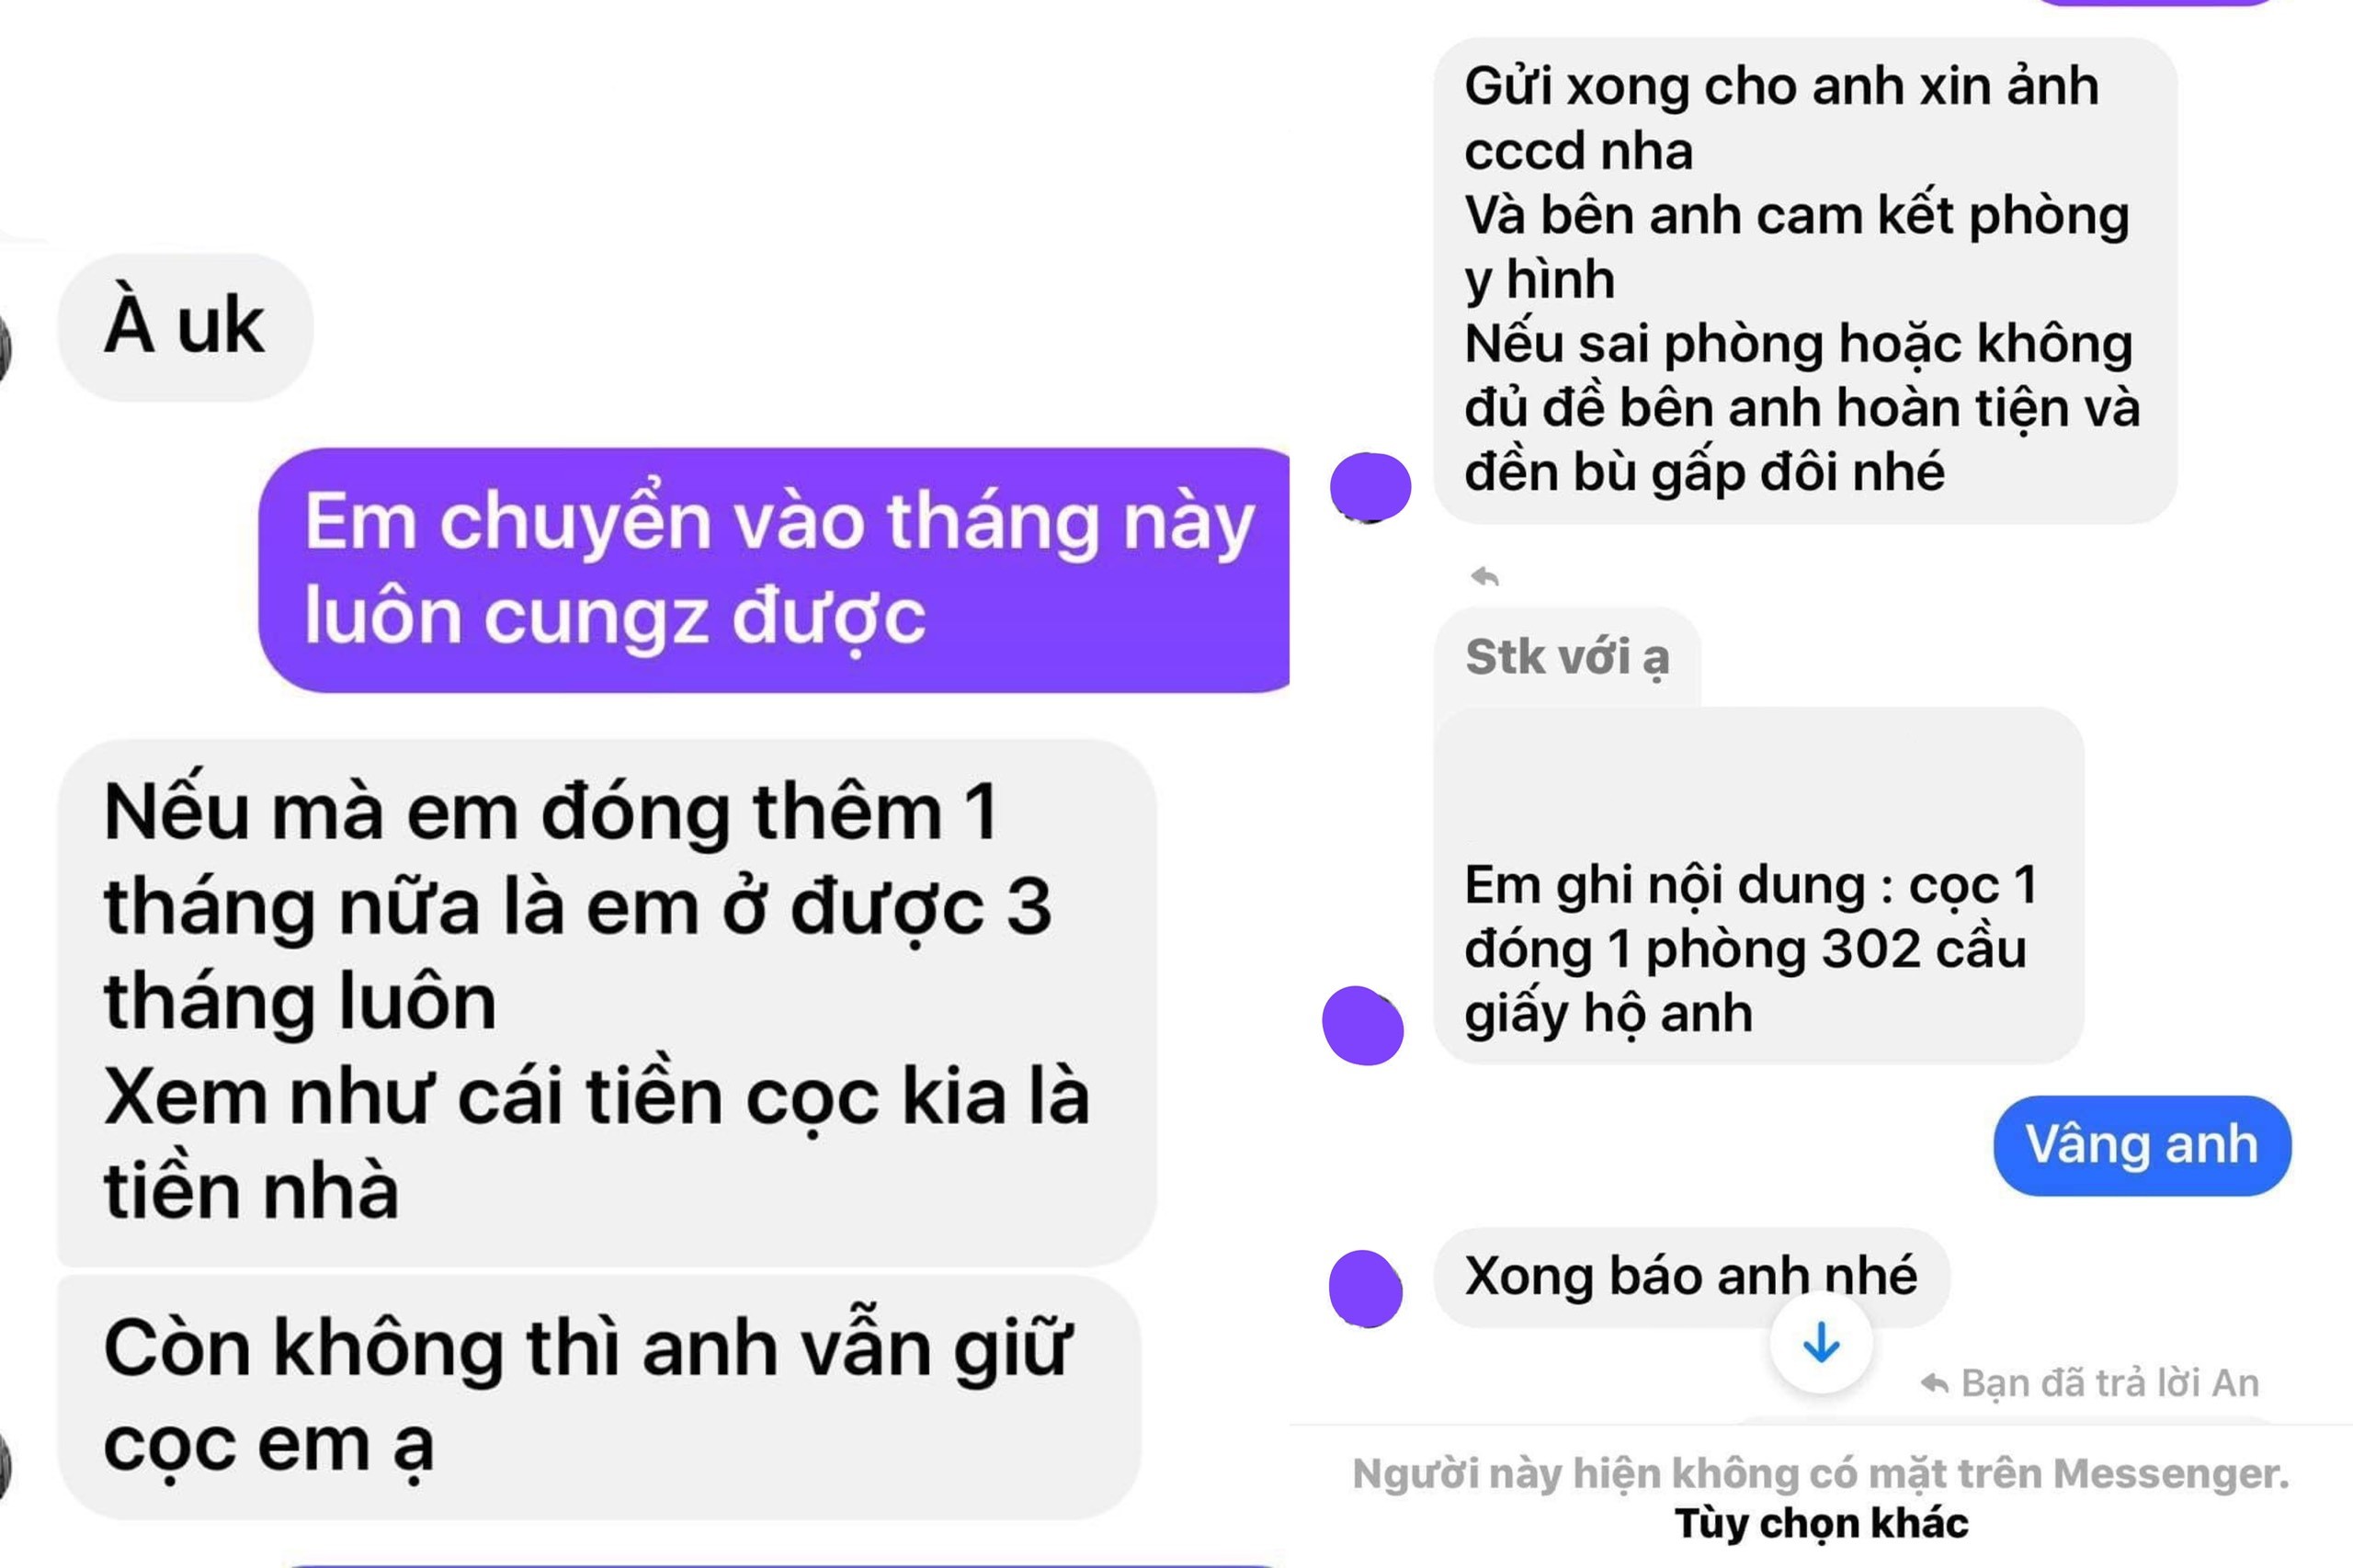 
Sau khi nhận được tiền chuyển khoản, D.A chặn Facebook của Thanh Huyền
